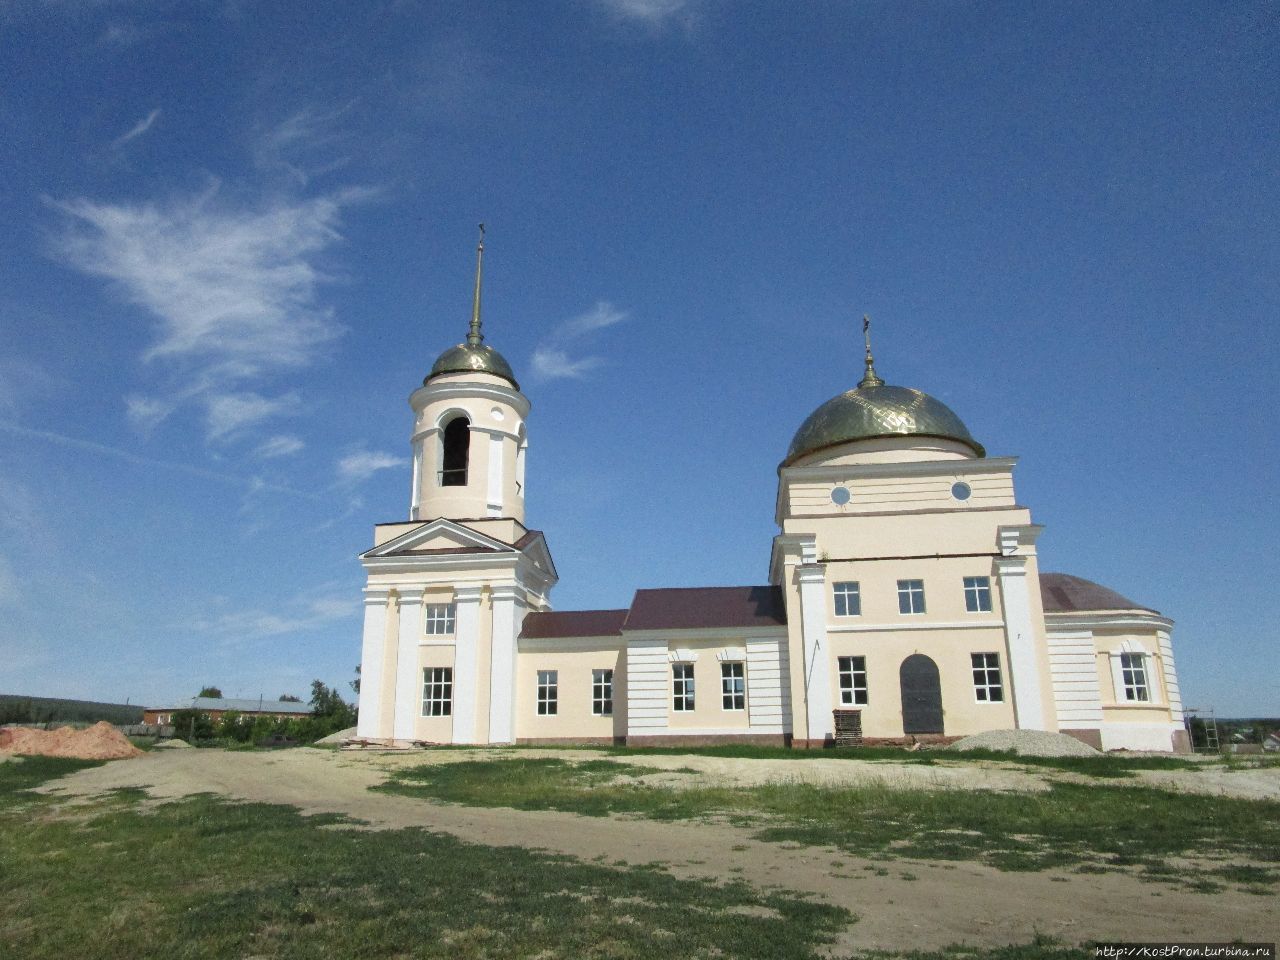 Церковь Иоанна Златоуста, построена в 1822 году. Сейчас идут работы по восстановлению. Базарный Карабулак, Россия